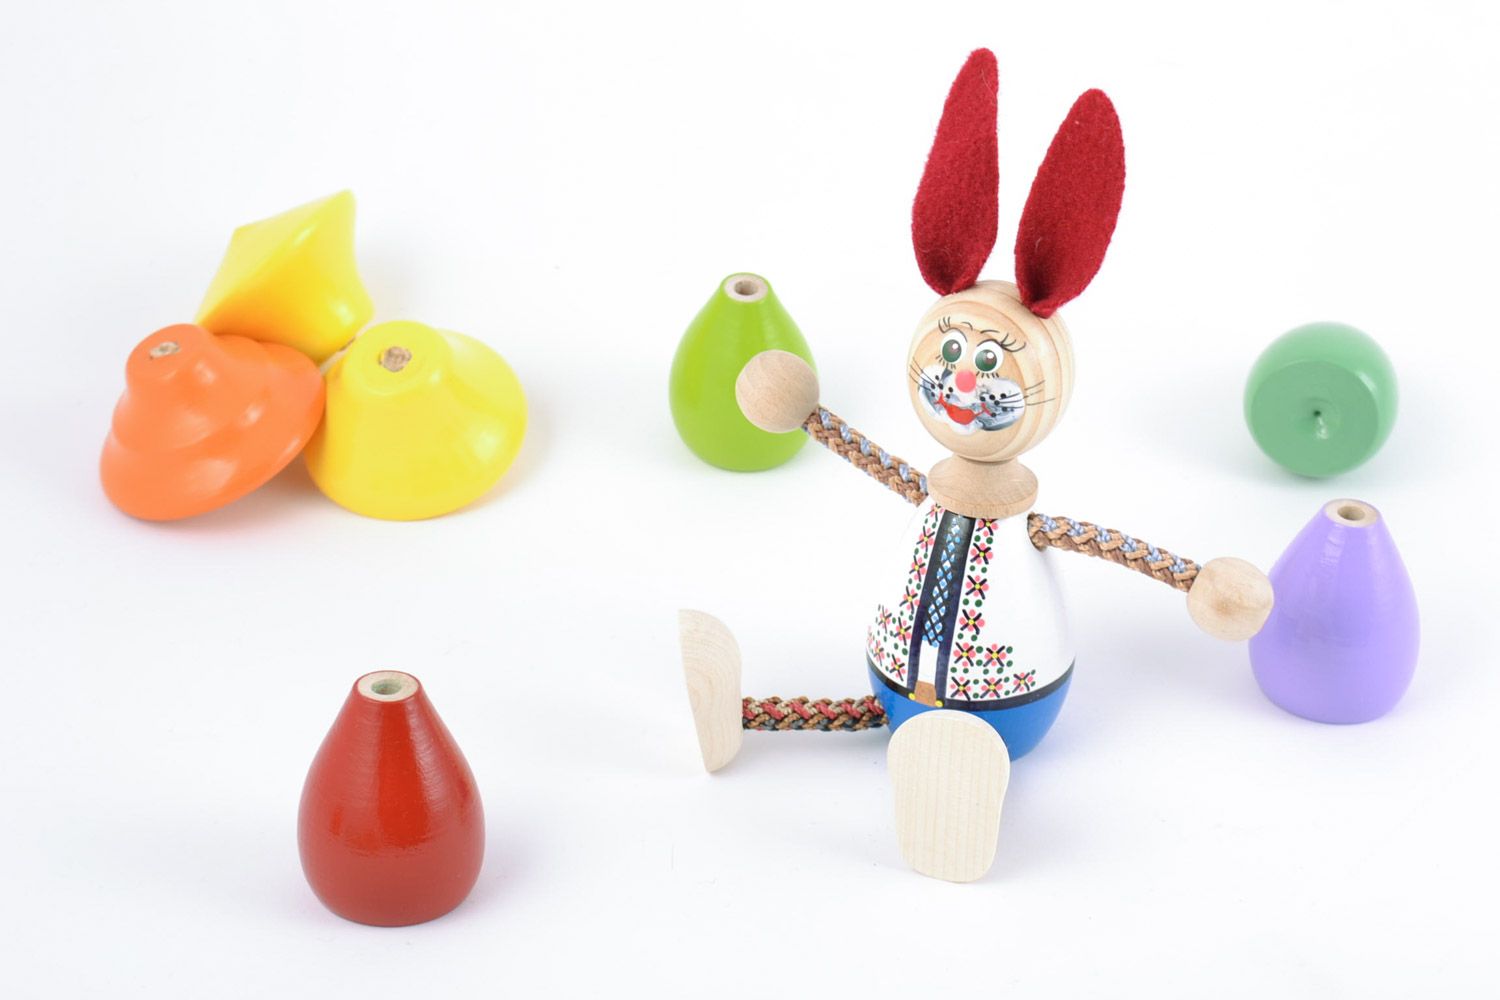 Handmade bemaltes Holz Spielzeug Hase mit langen Ohren Geschenk für Kind  foto 1